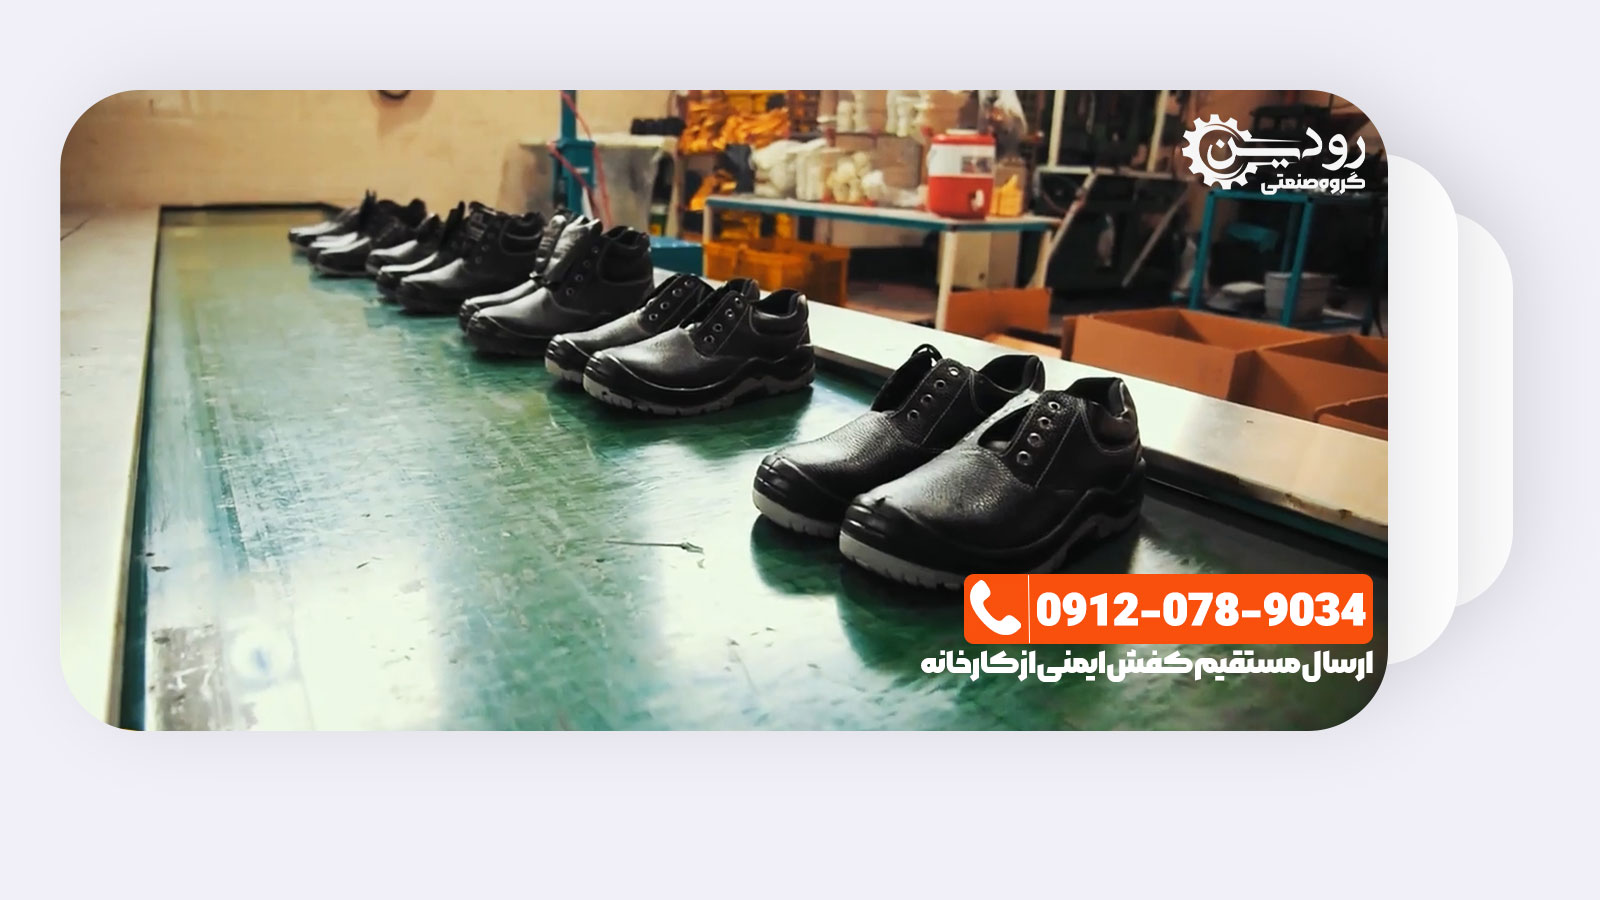 فروش مستقیم و بدون واسطه انواع کفش ایمنی ارزان در مرکز خرید کفش ایمنی تهران